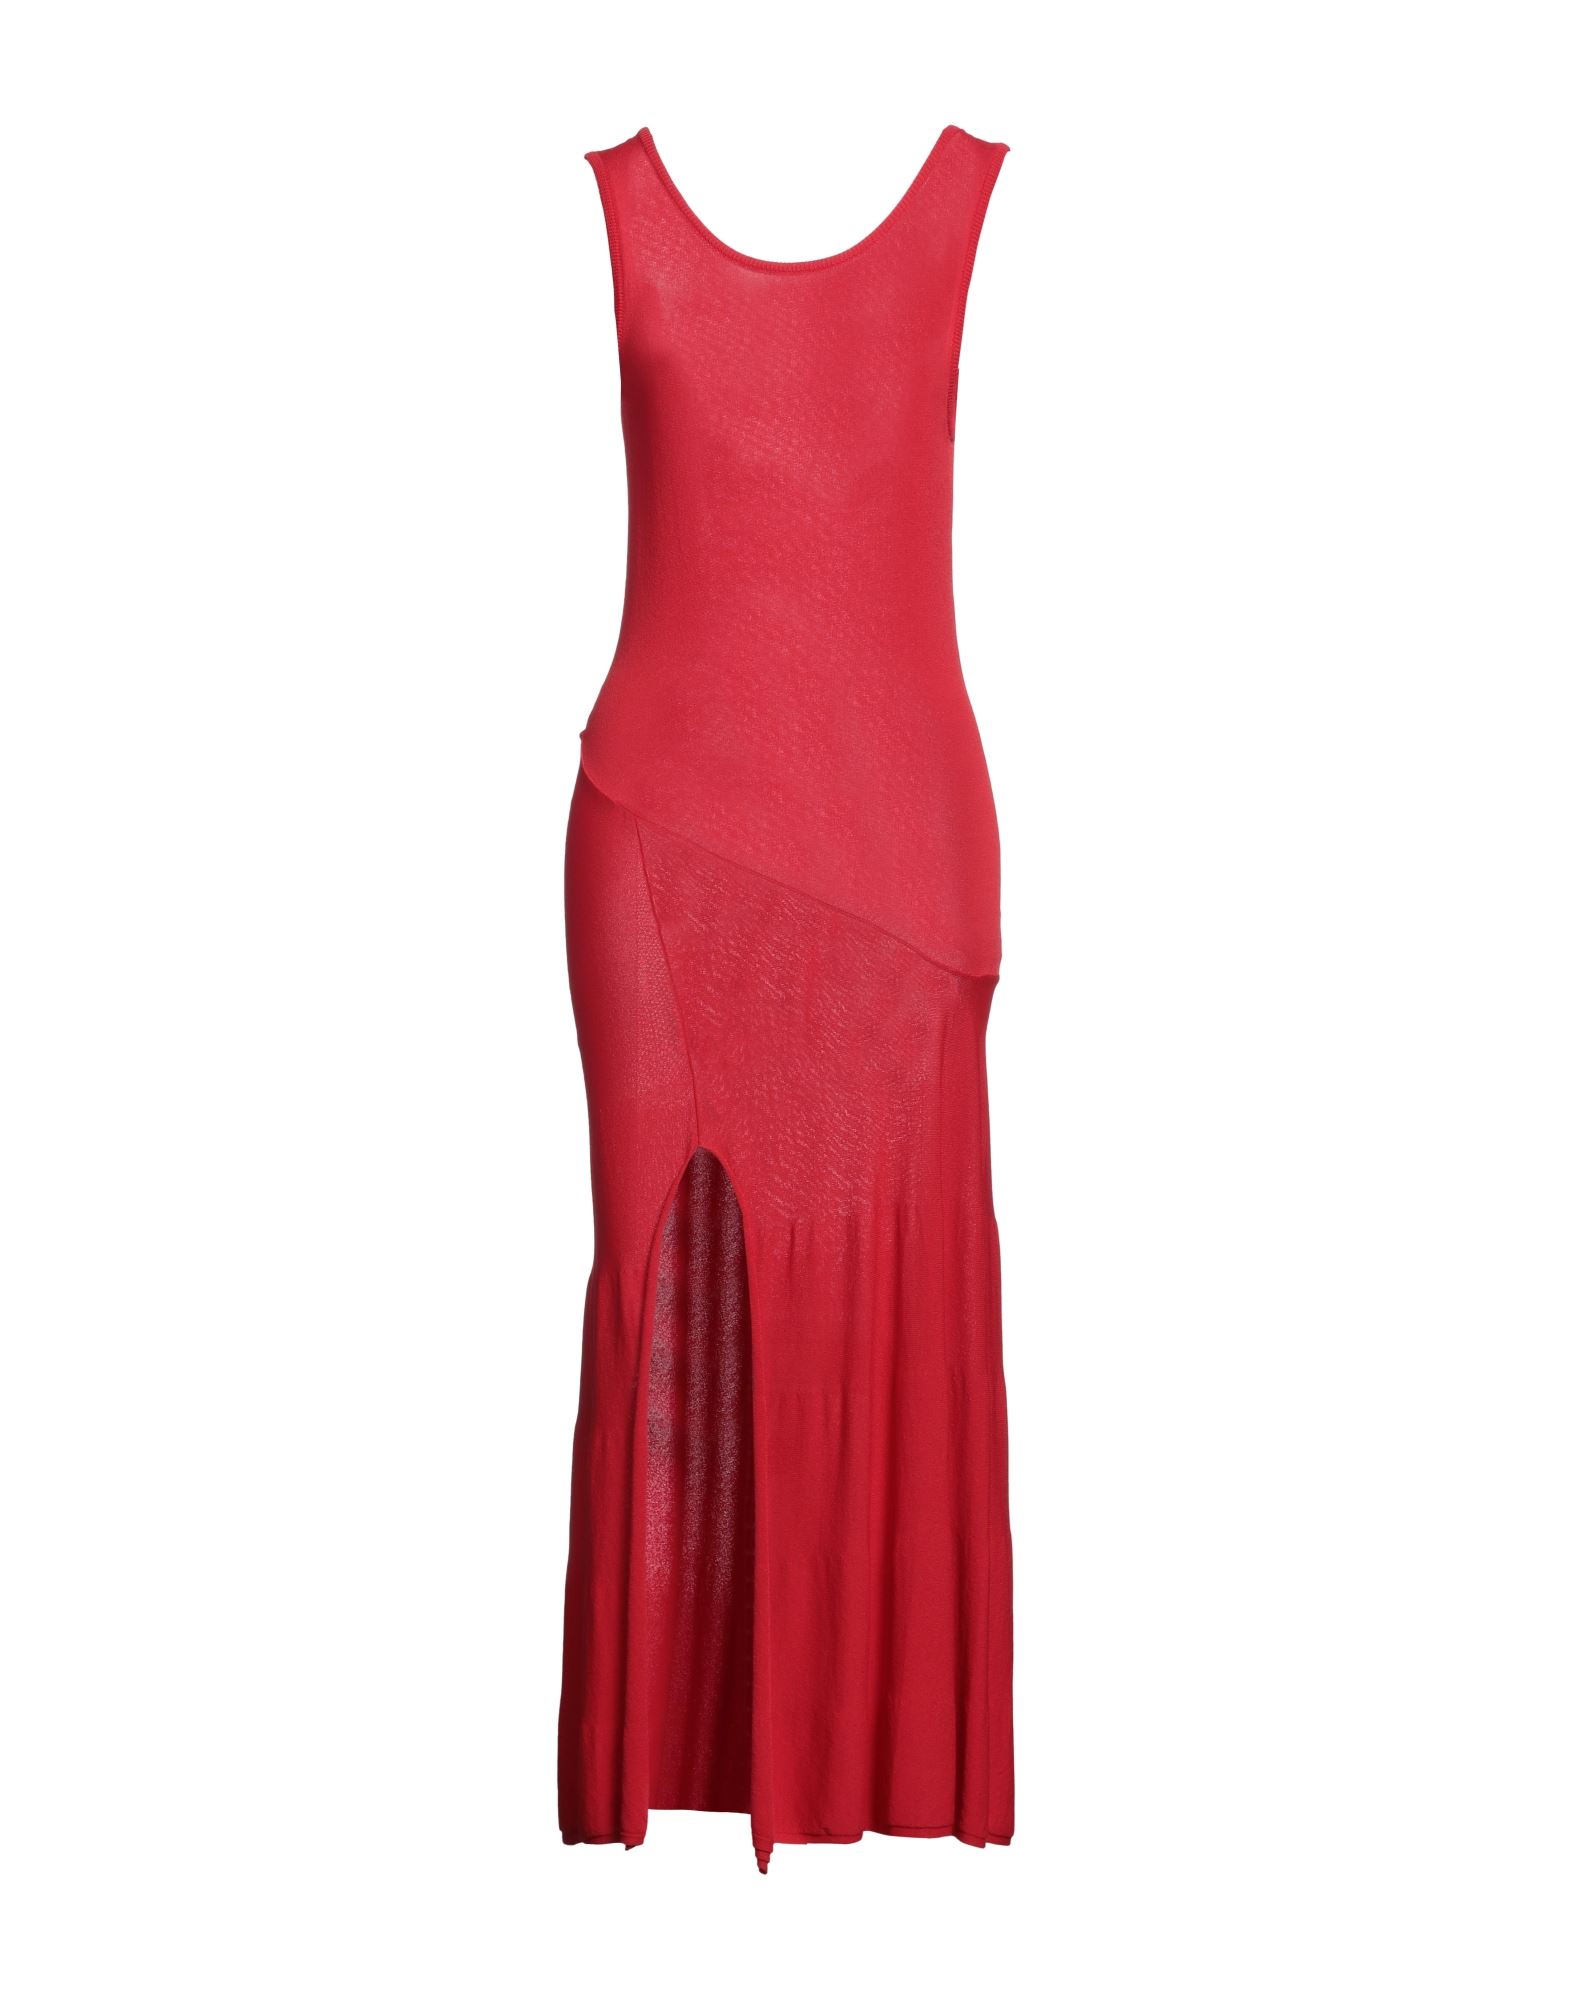 Erika Cavallini Midi Dresses In Red